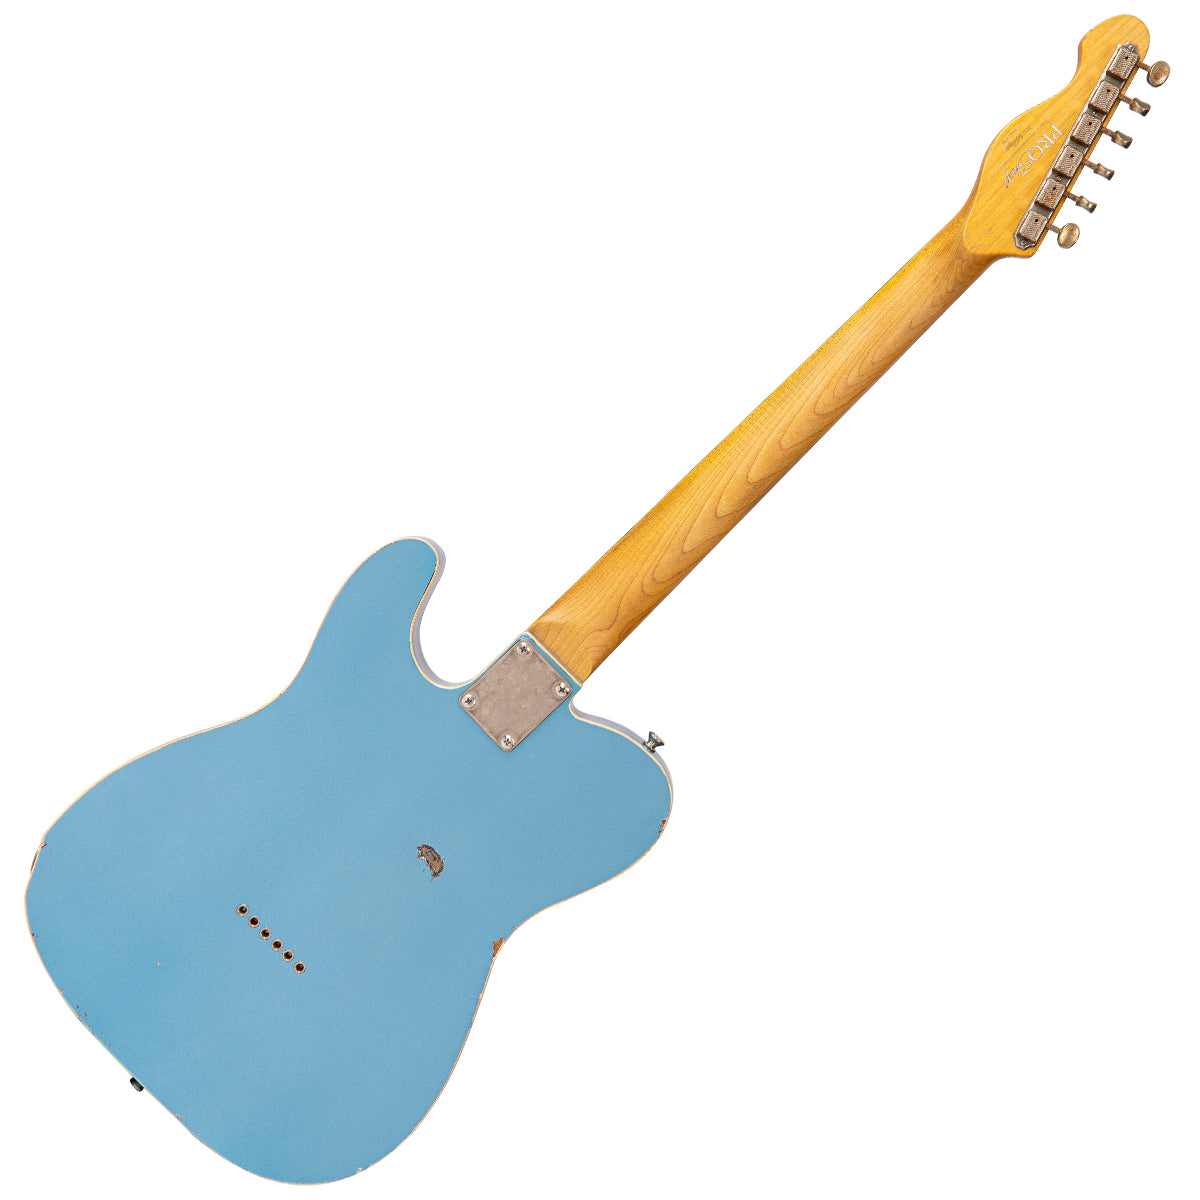 SOLD - Vintage V62 ProShop Unique ~ Blue Sparkle, Electrics for sale at Richards Guitars.